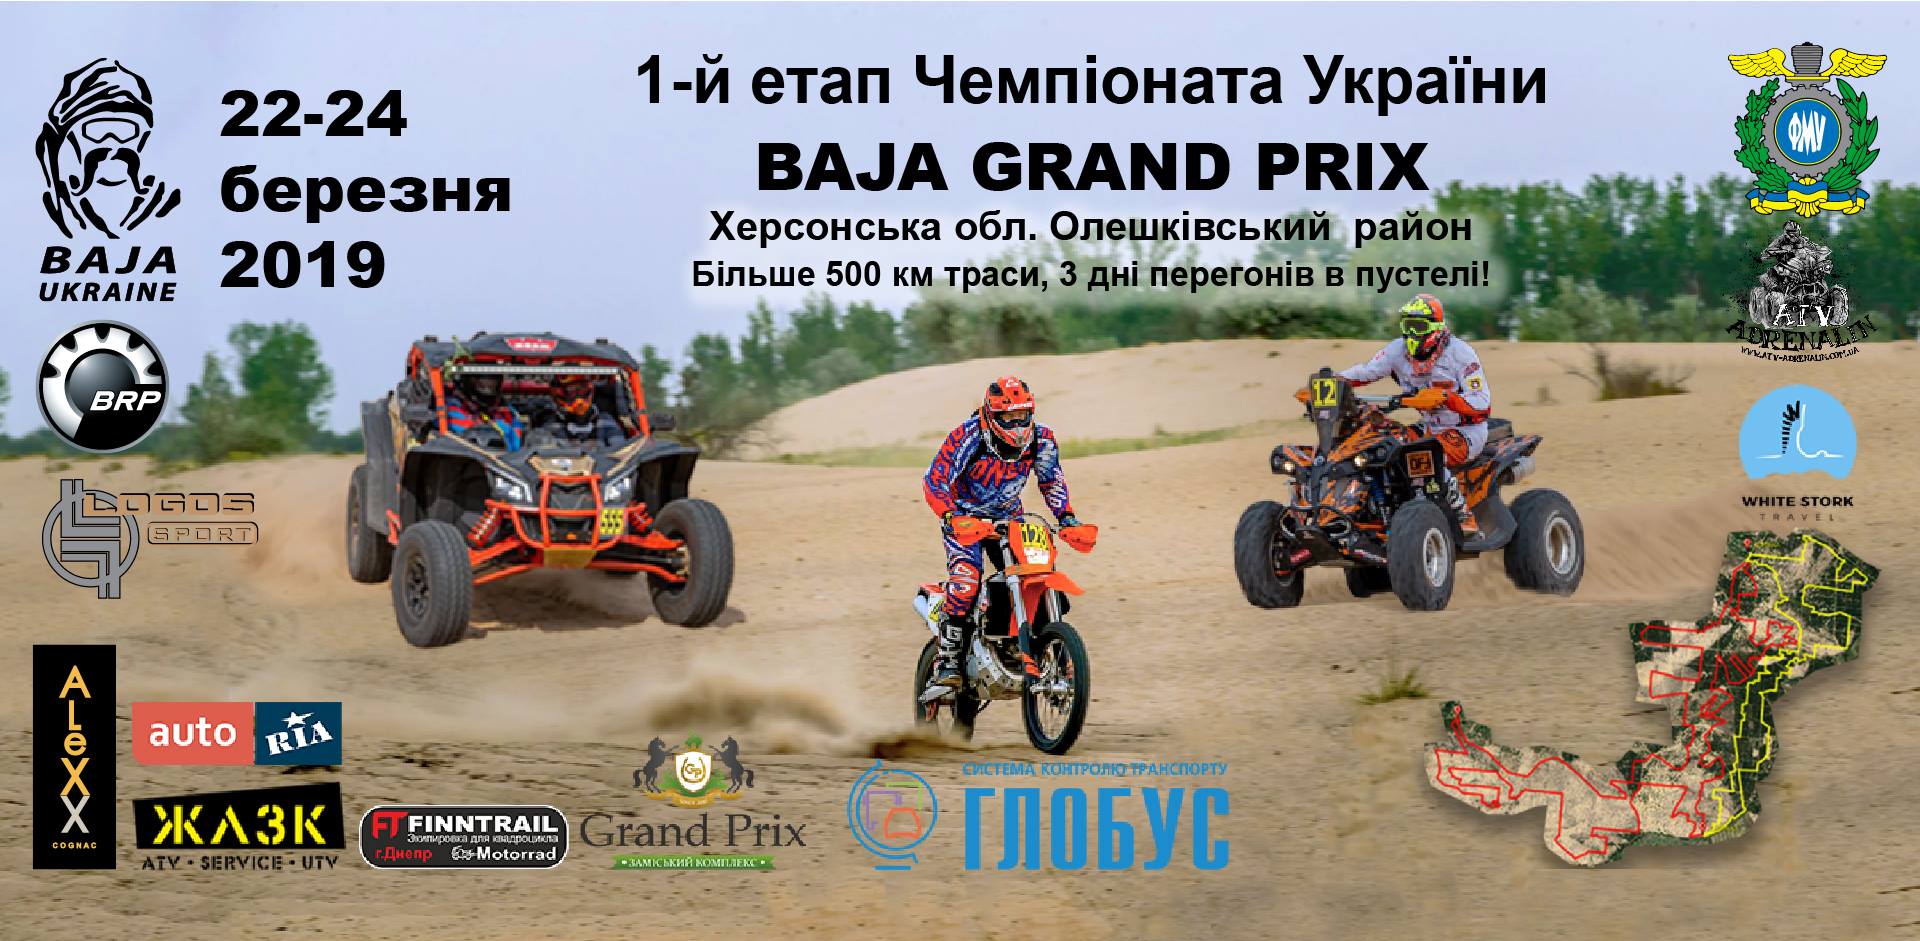 «BAJA GRAND PRIX» – 1-й етап Чемпіонату України 2019 року з BAJA